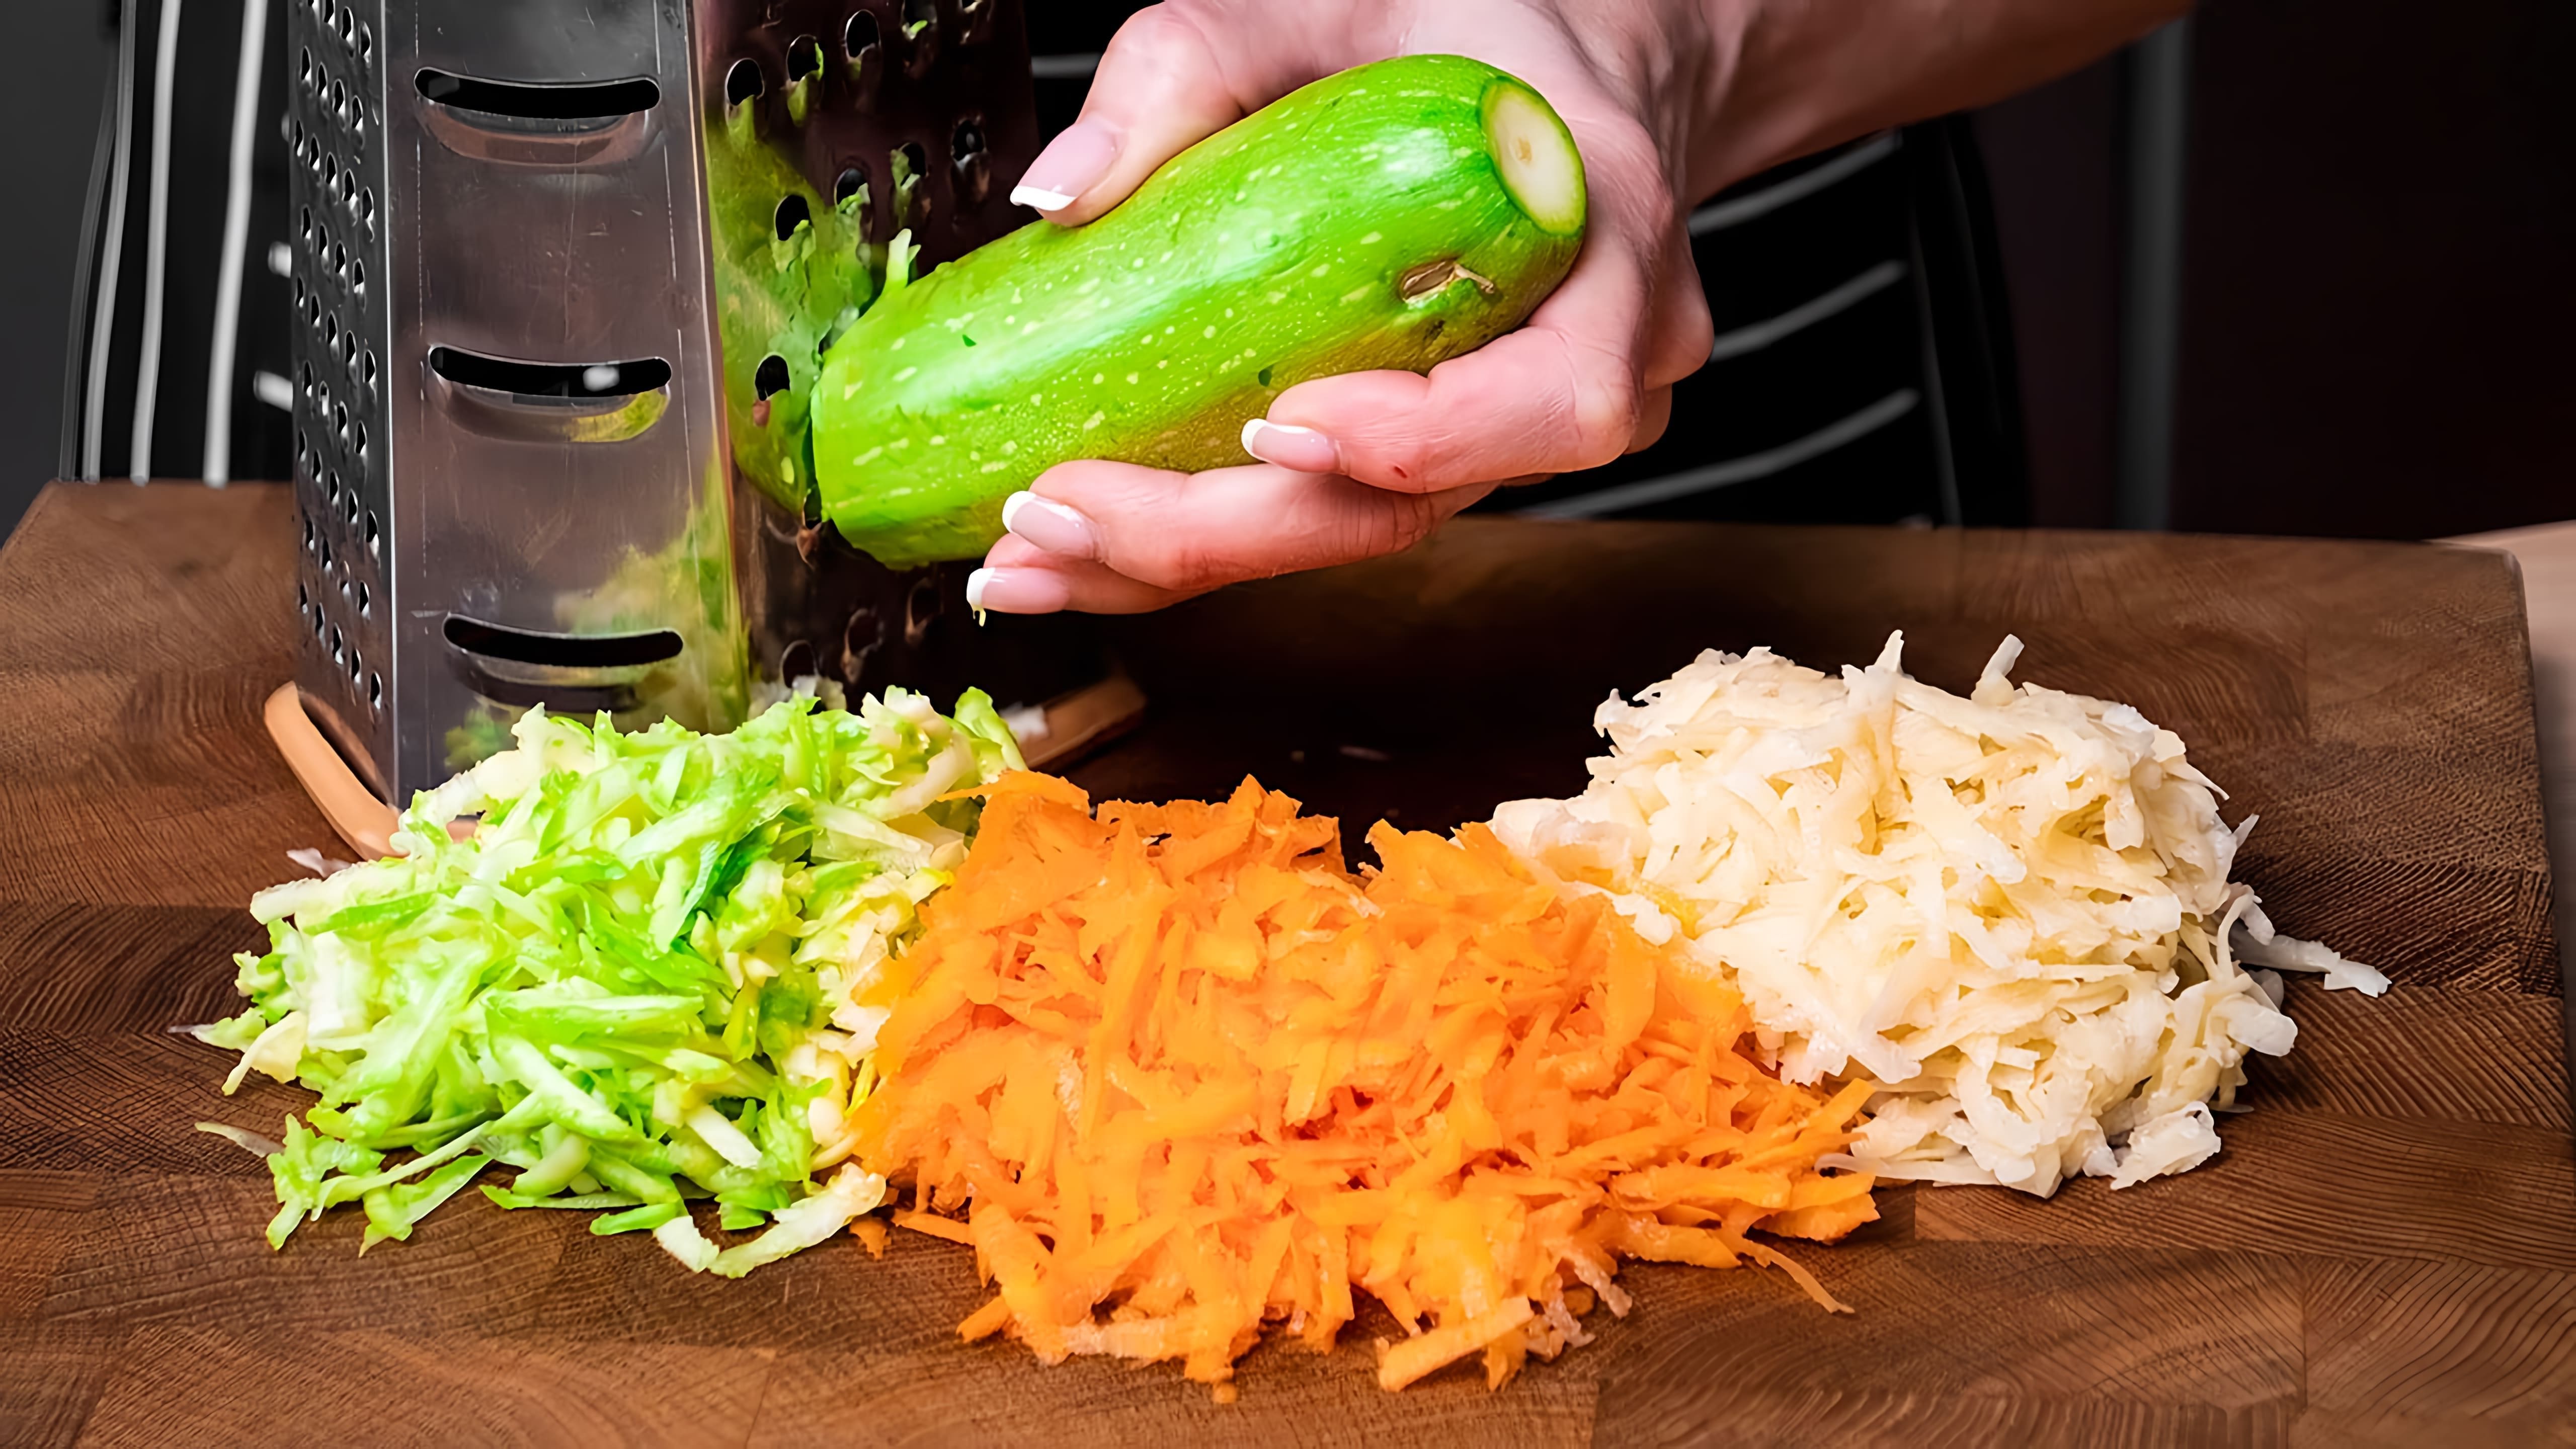 В этом видео демонстрируется рецепт приготовления овощного кугеля